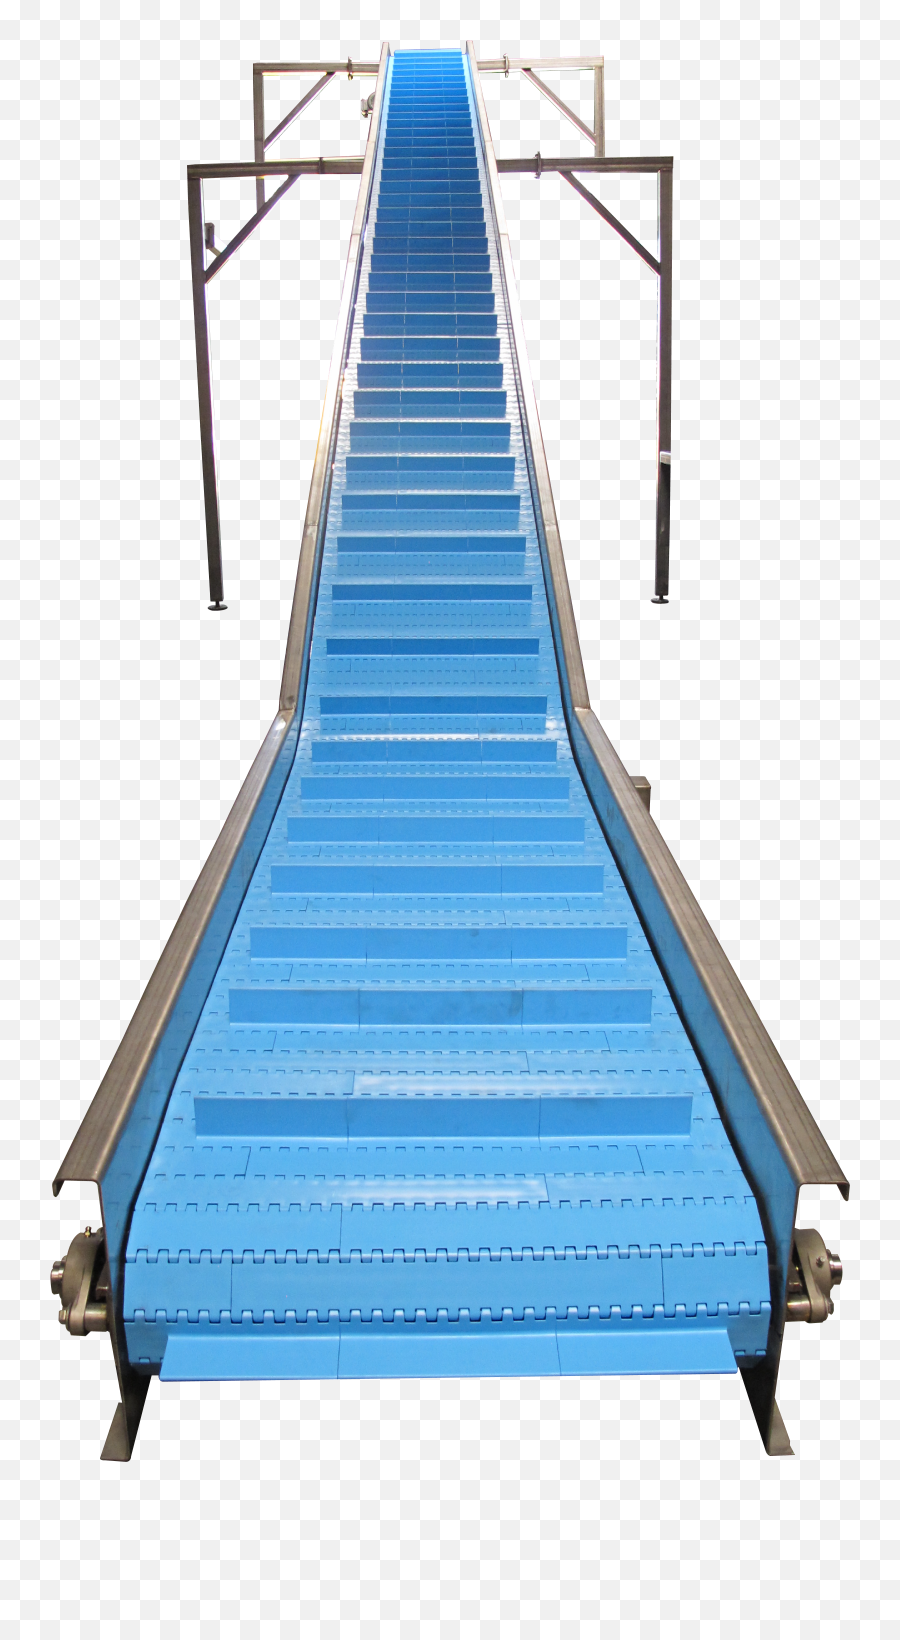 Transfer Incline Conveyor Conveyors Conveyor Baldwin Park Emoji,Escalator Clipart